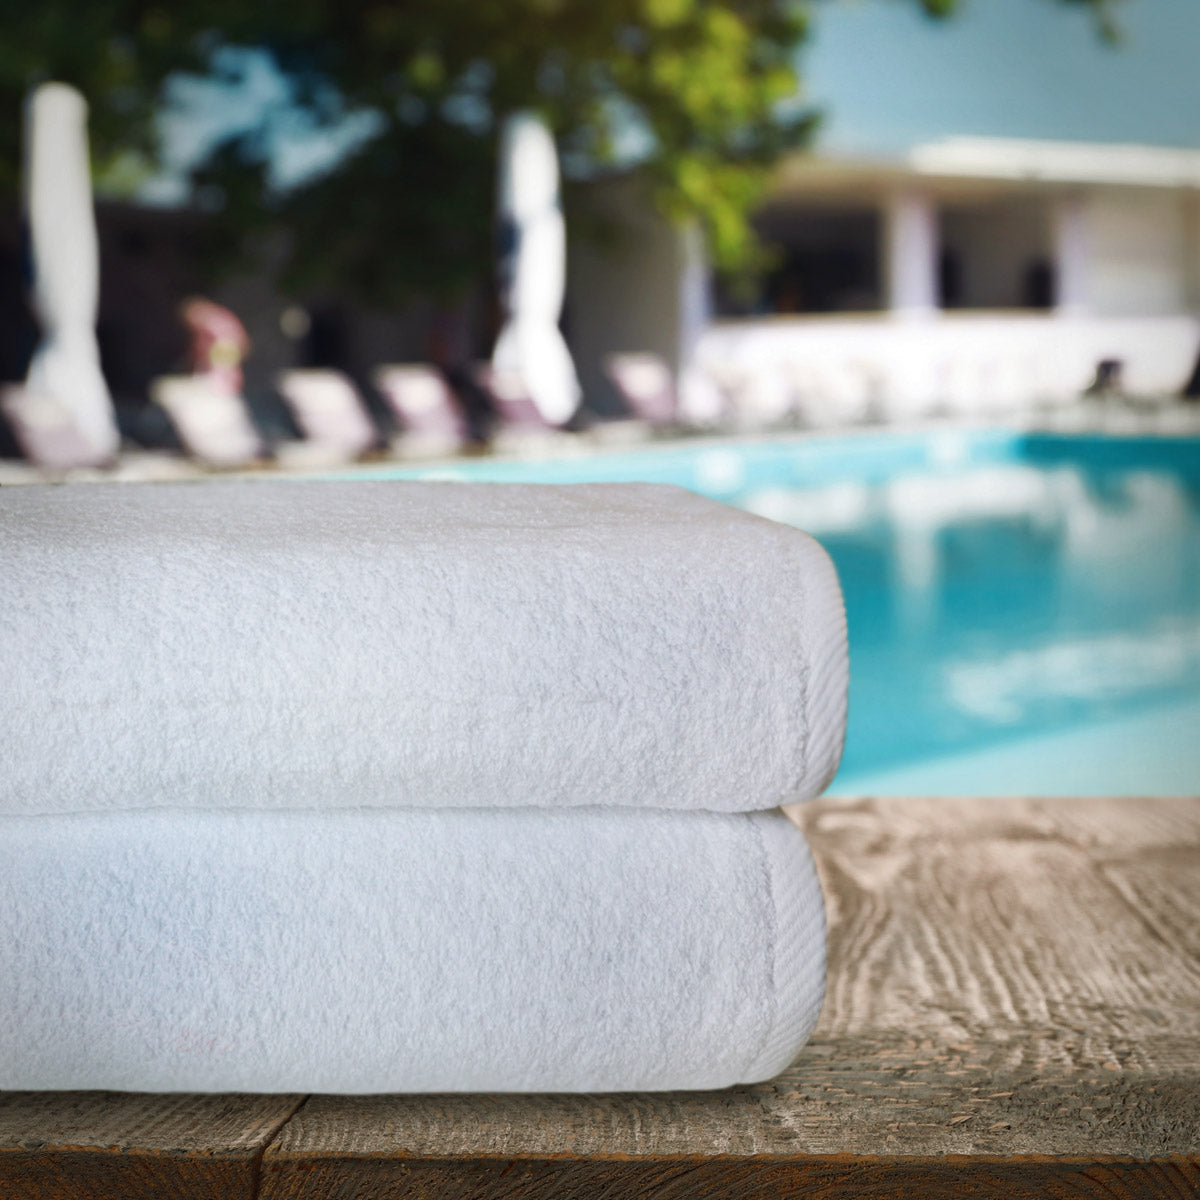 Pack de 6 toallas blancas para hoteles, spas, albercas o gimnasios